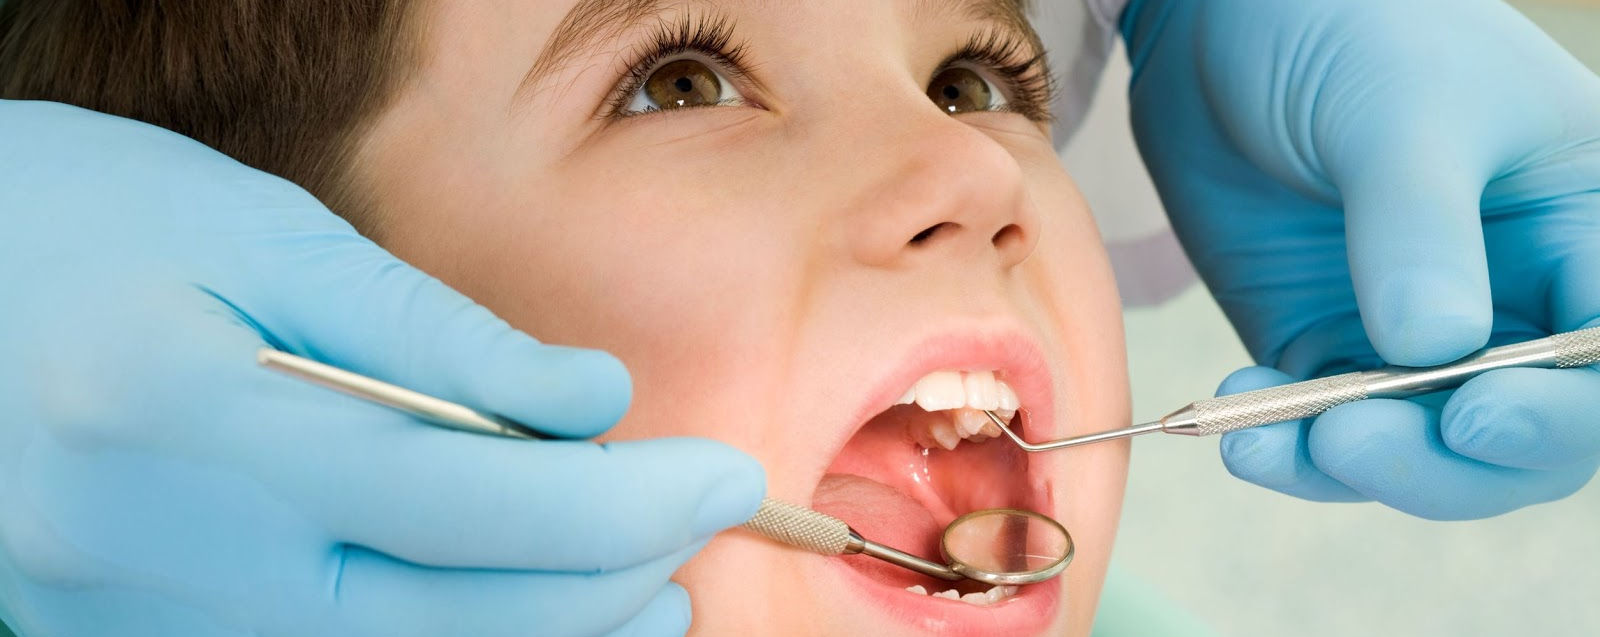 La odontología carrera con gran demanda imagen 1